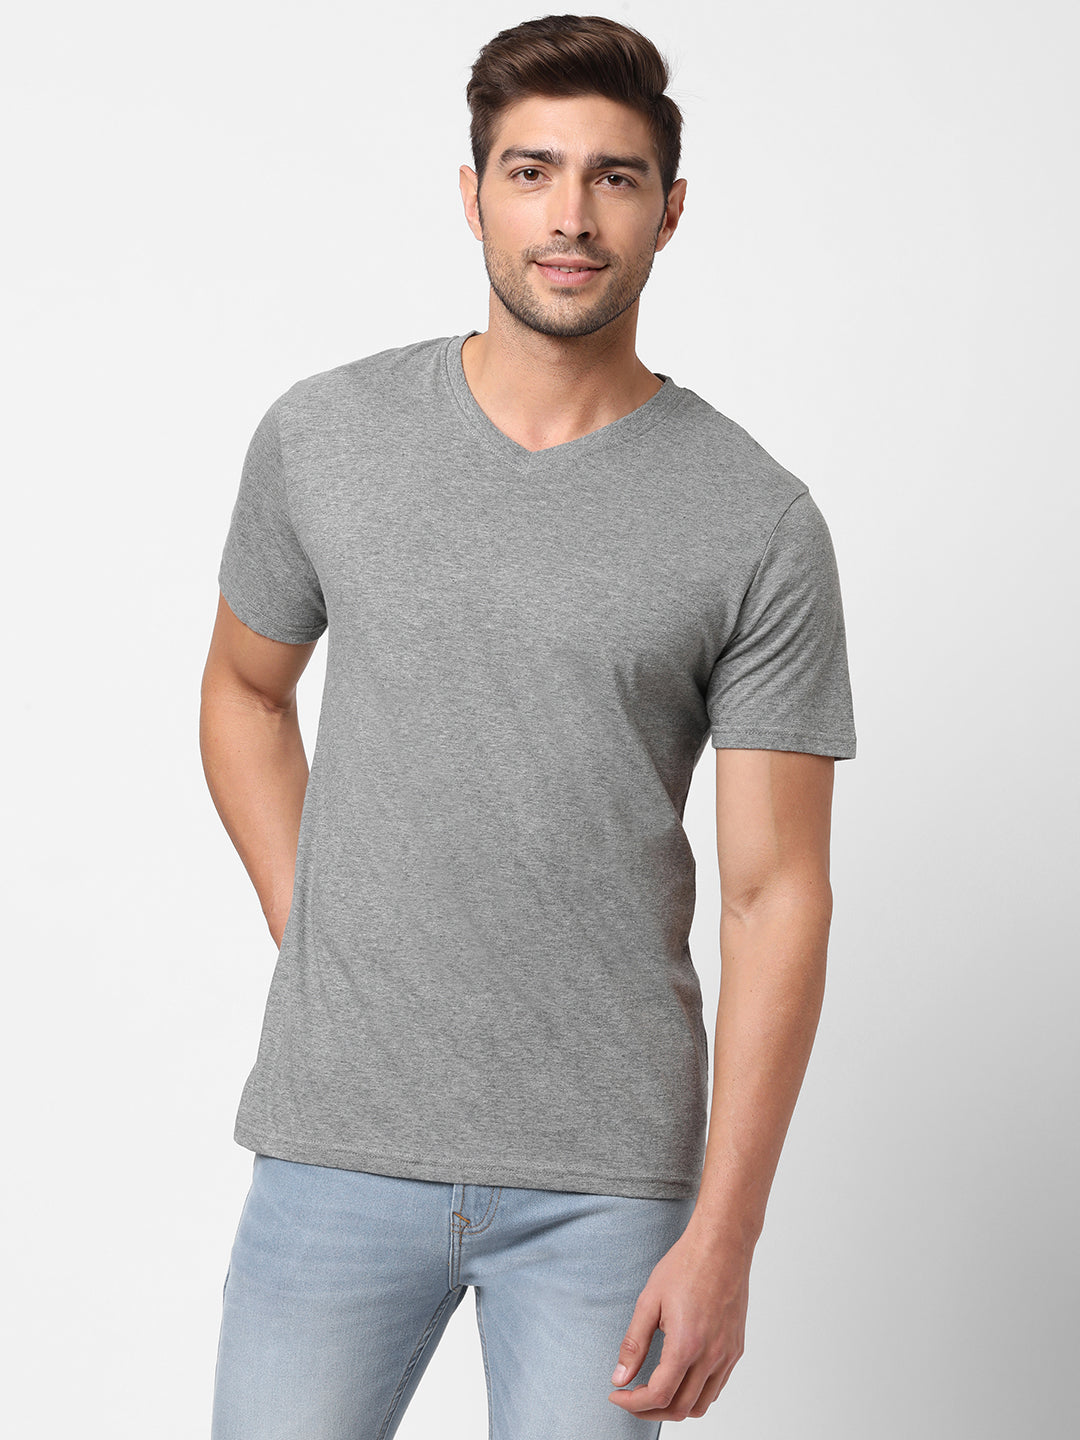 Light Grey Tshirt | Mens Casual Regular Fit Cotton Tshirt